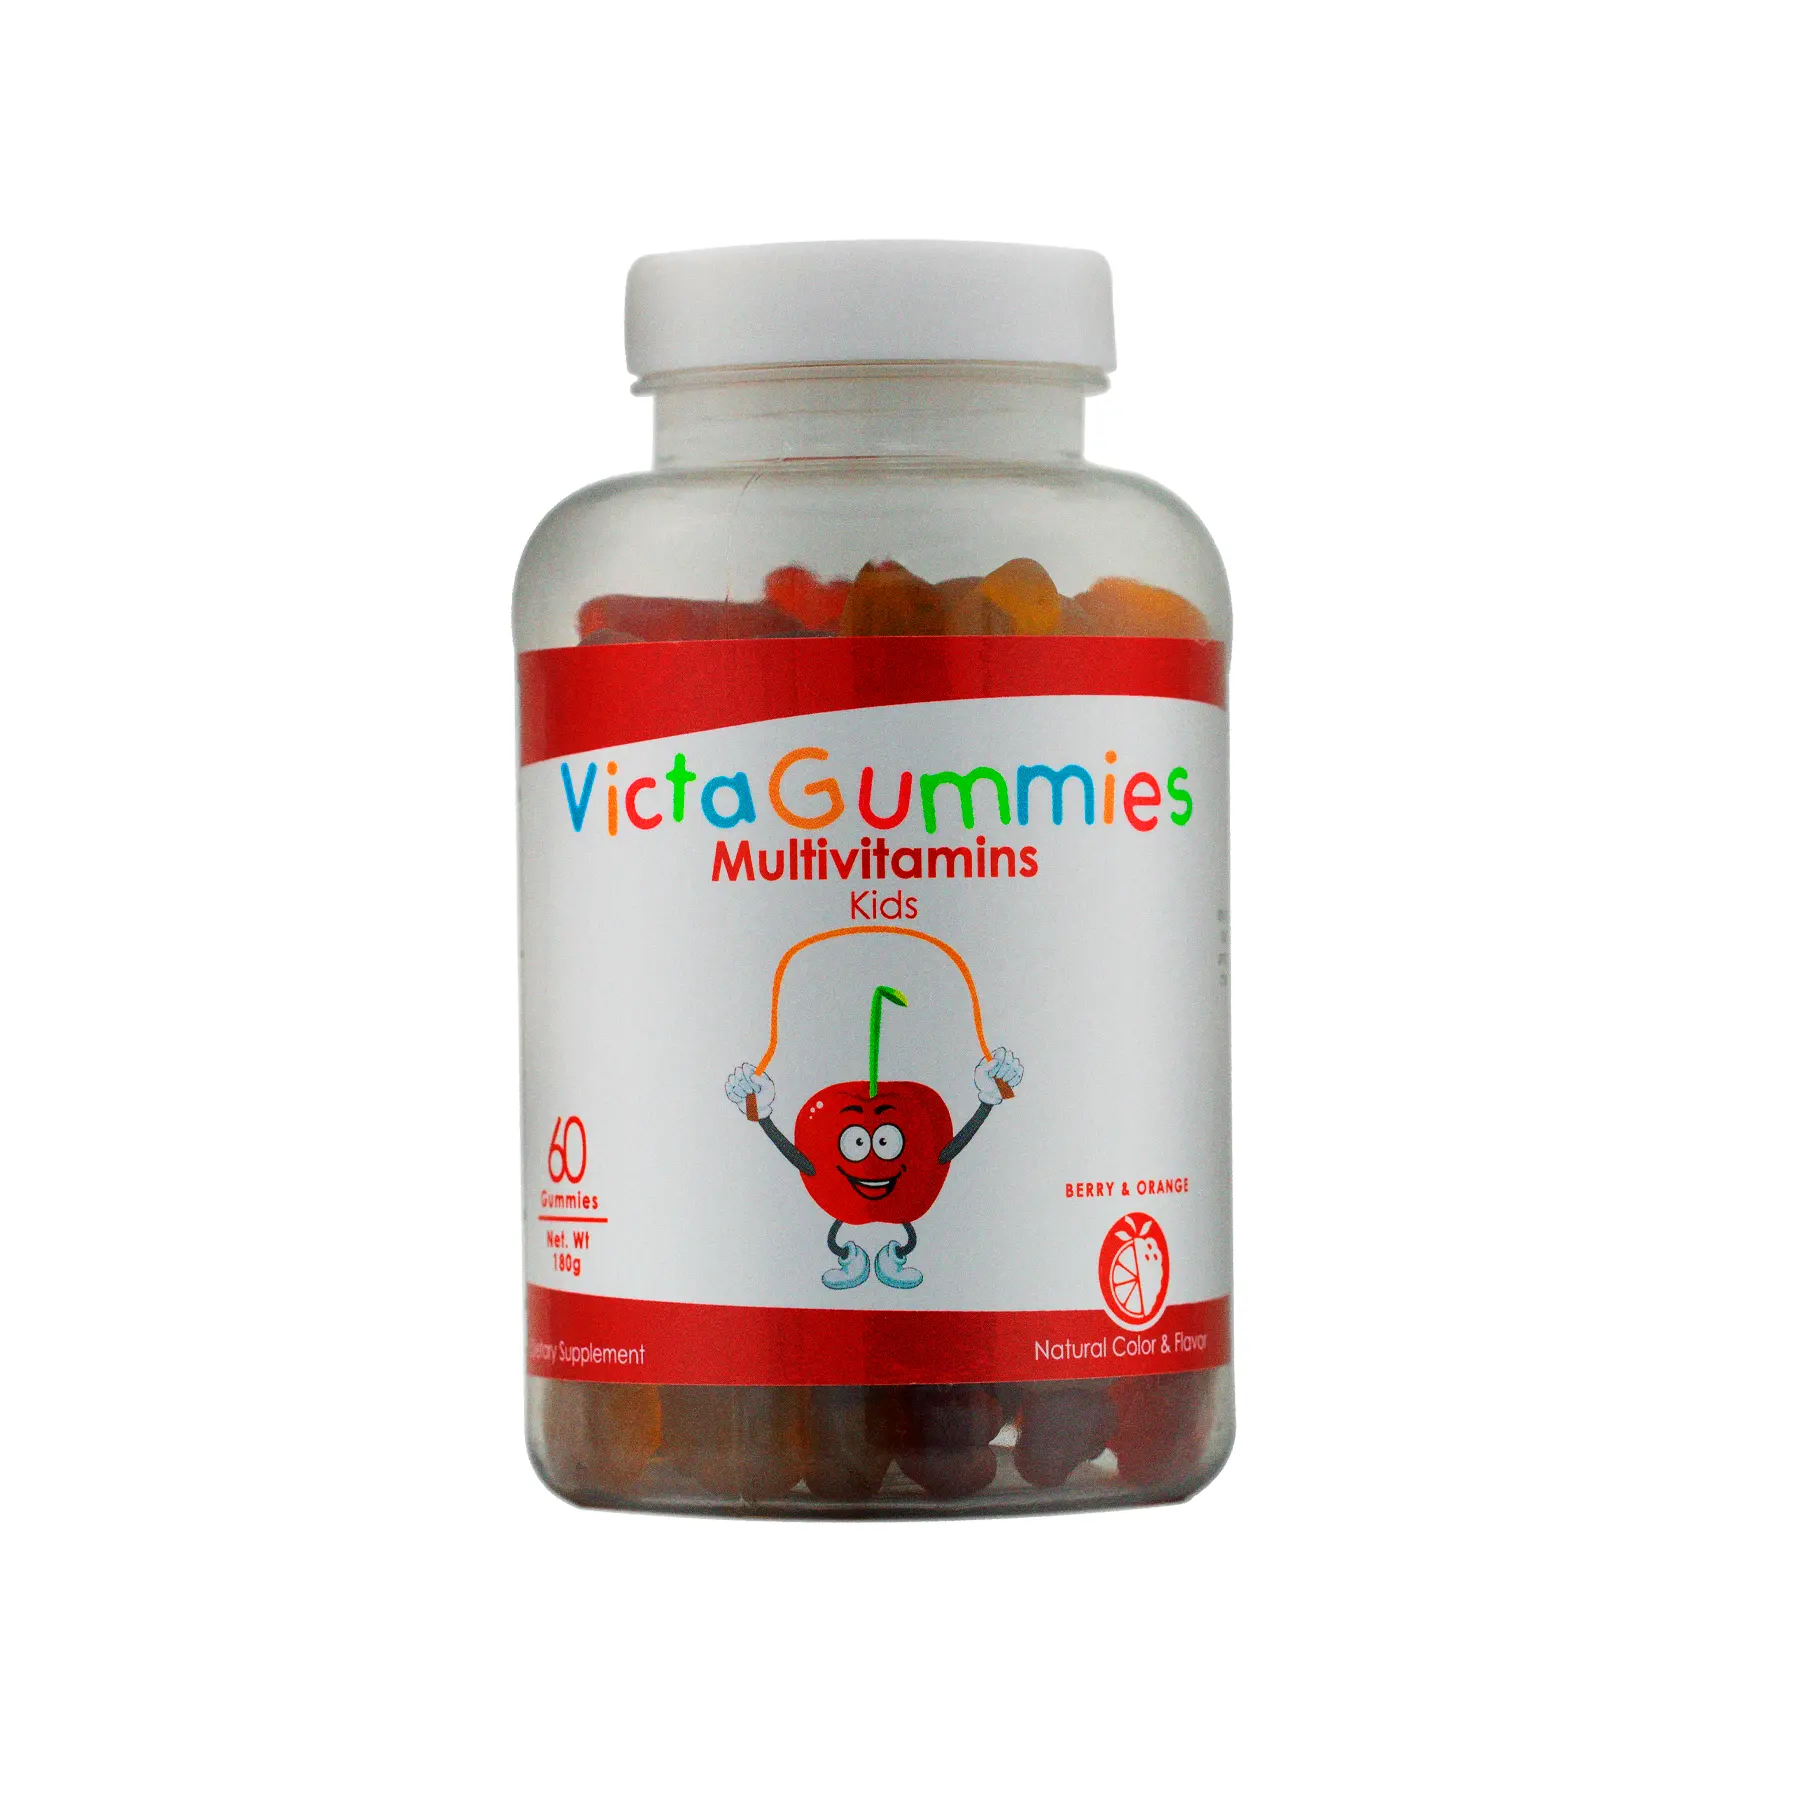 Victagummies multivitamins 60 gomas por garrafa-suplemento alimentar para crianças com uma mistura de vitaminas a, c, d, e vitamina b